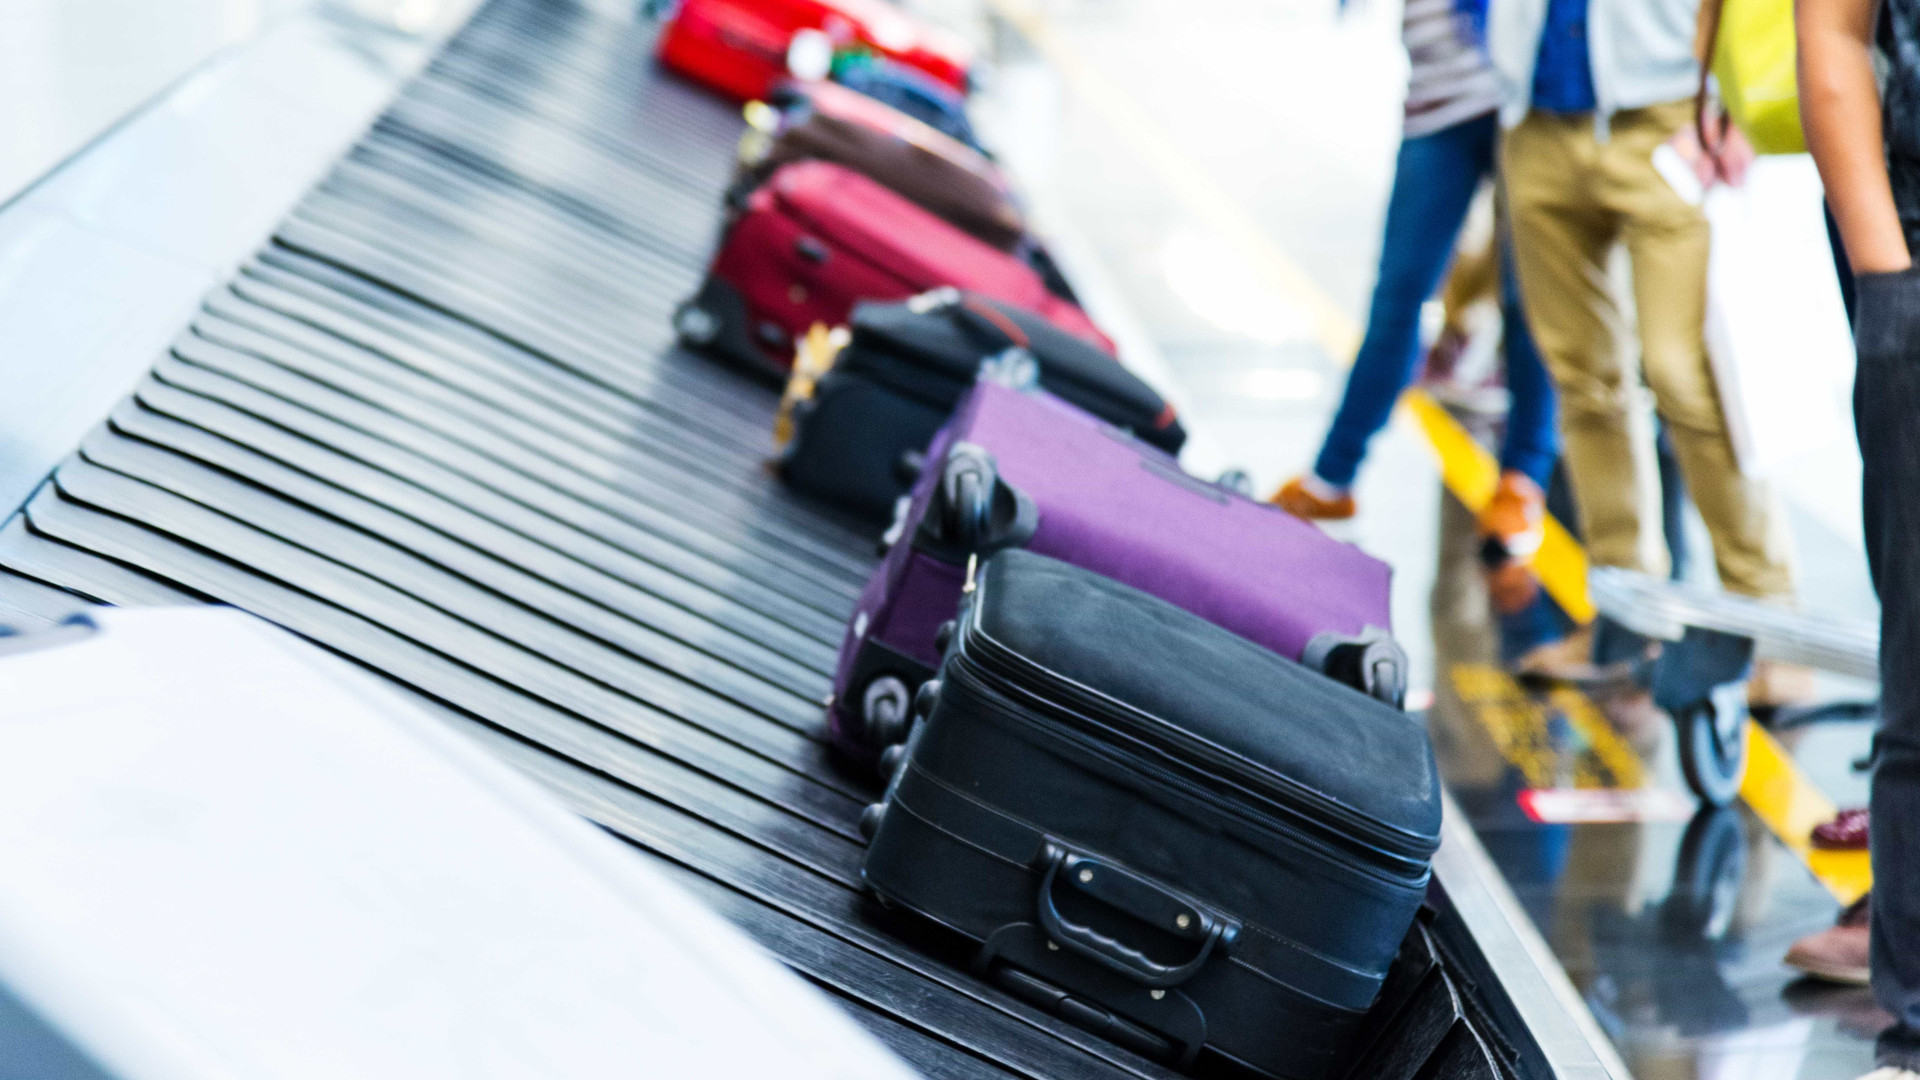 Justiça revoga liminar que suspendia
cobrança de bagagem despachada